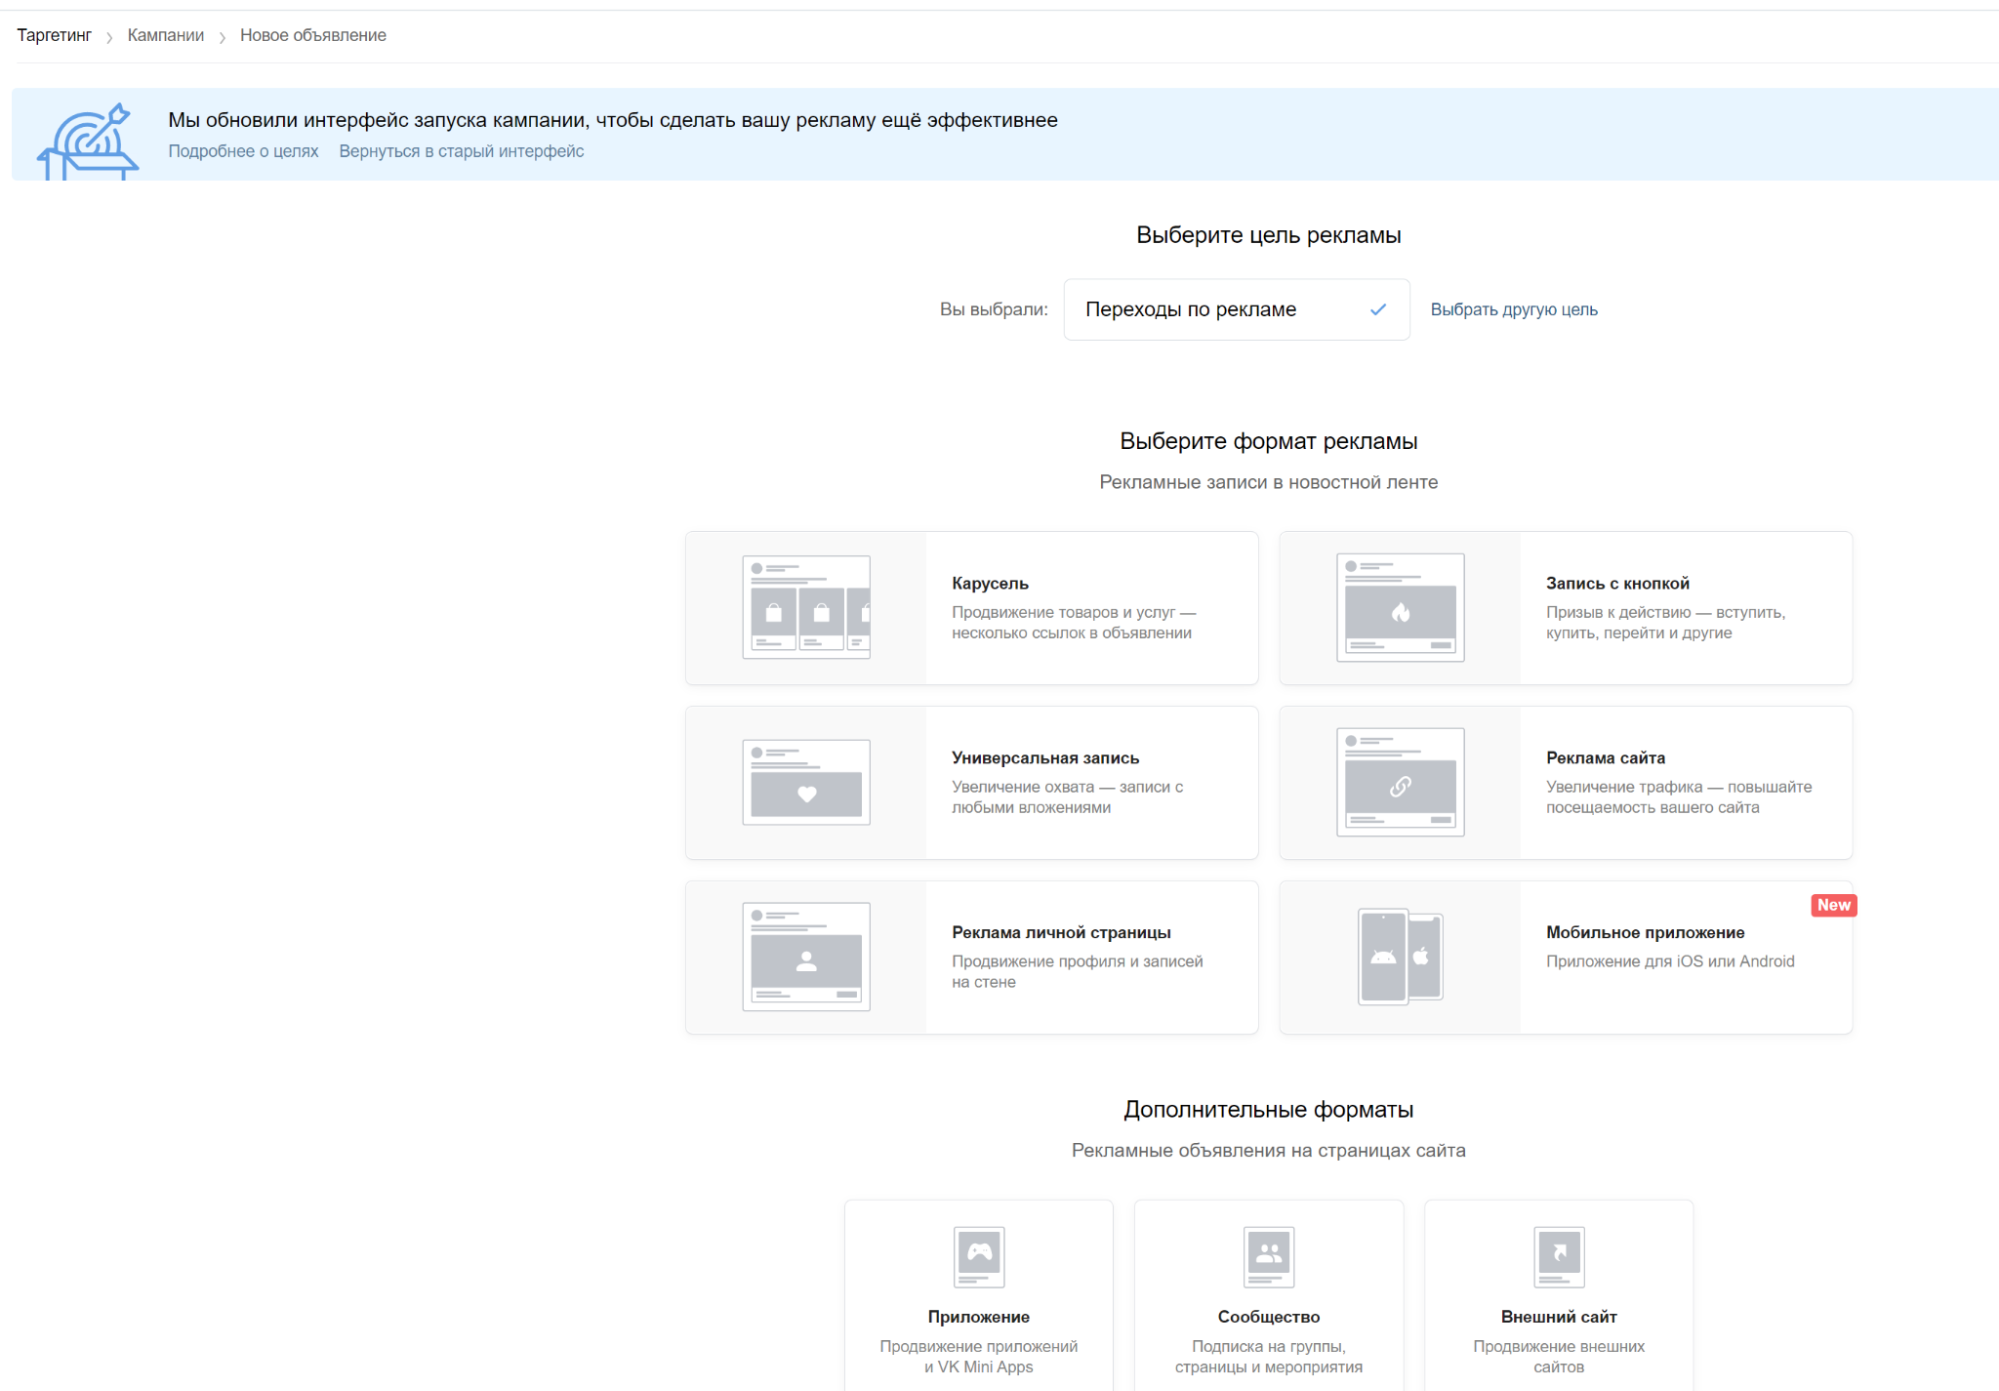 Обновленный интерфейс рекламного кабинета Вконтакте: что изменилось, а что осталось по-прежнему